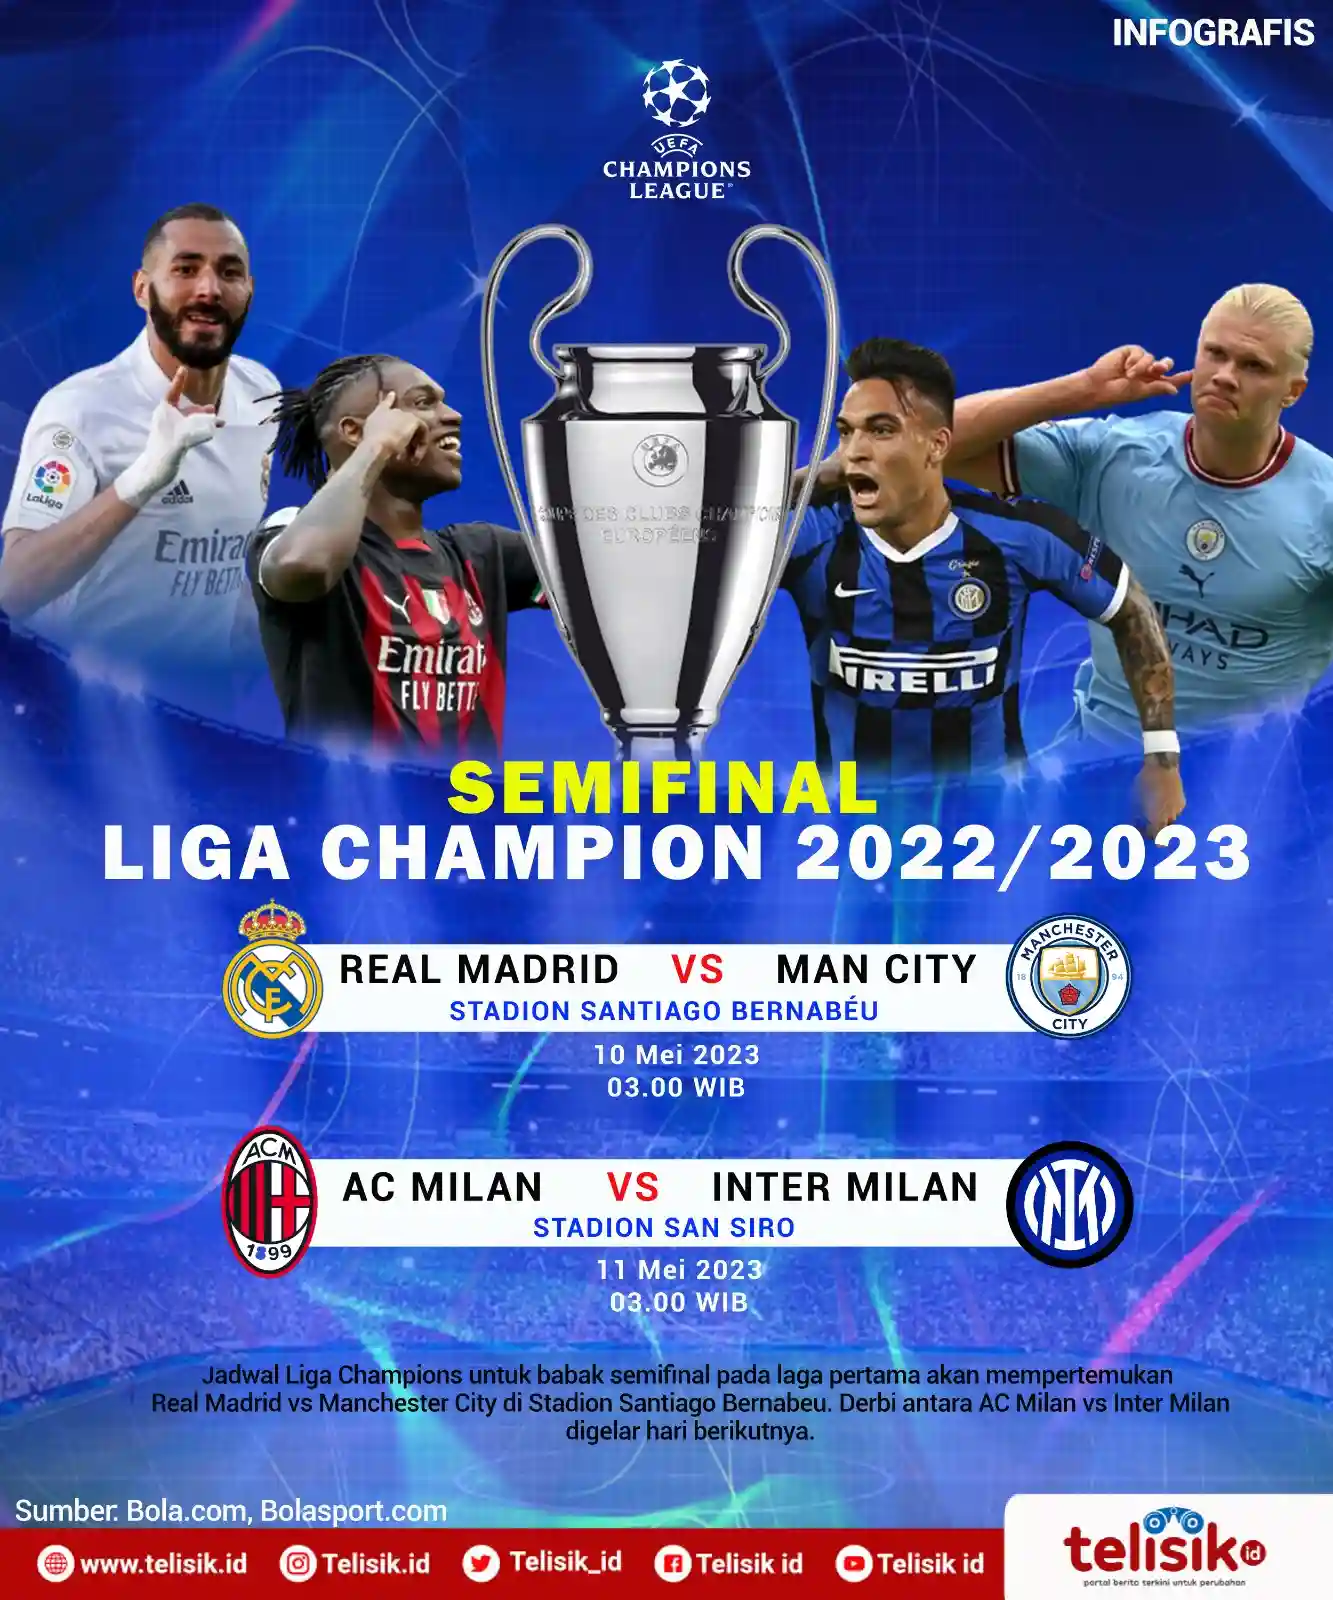 Infografis: Jadwal Semifinal Liga Champions 2023, Duo Milan Saling Sikut